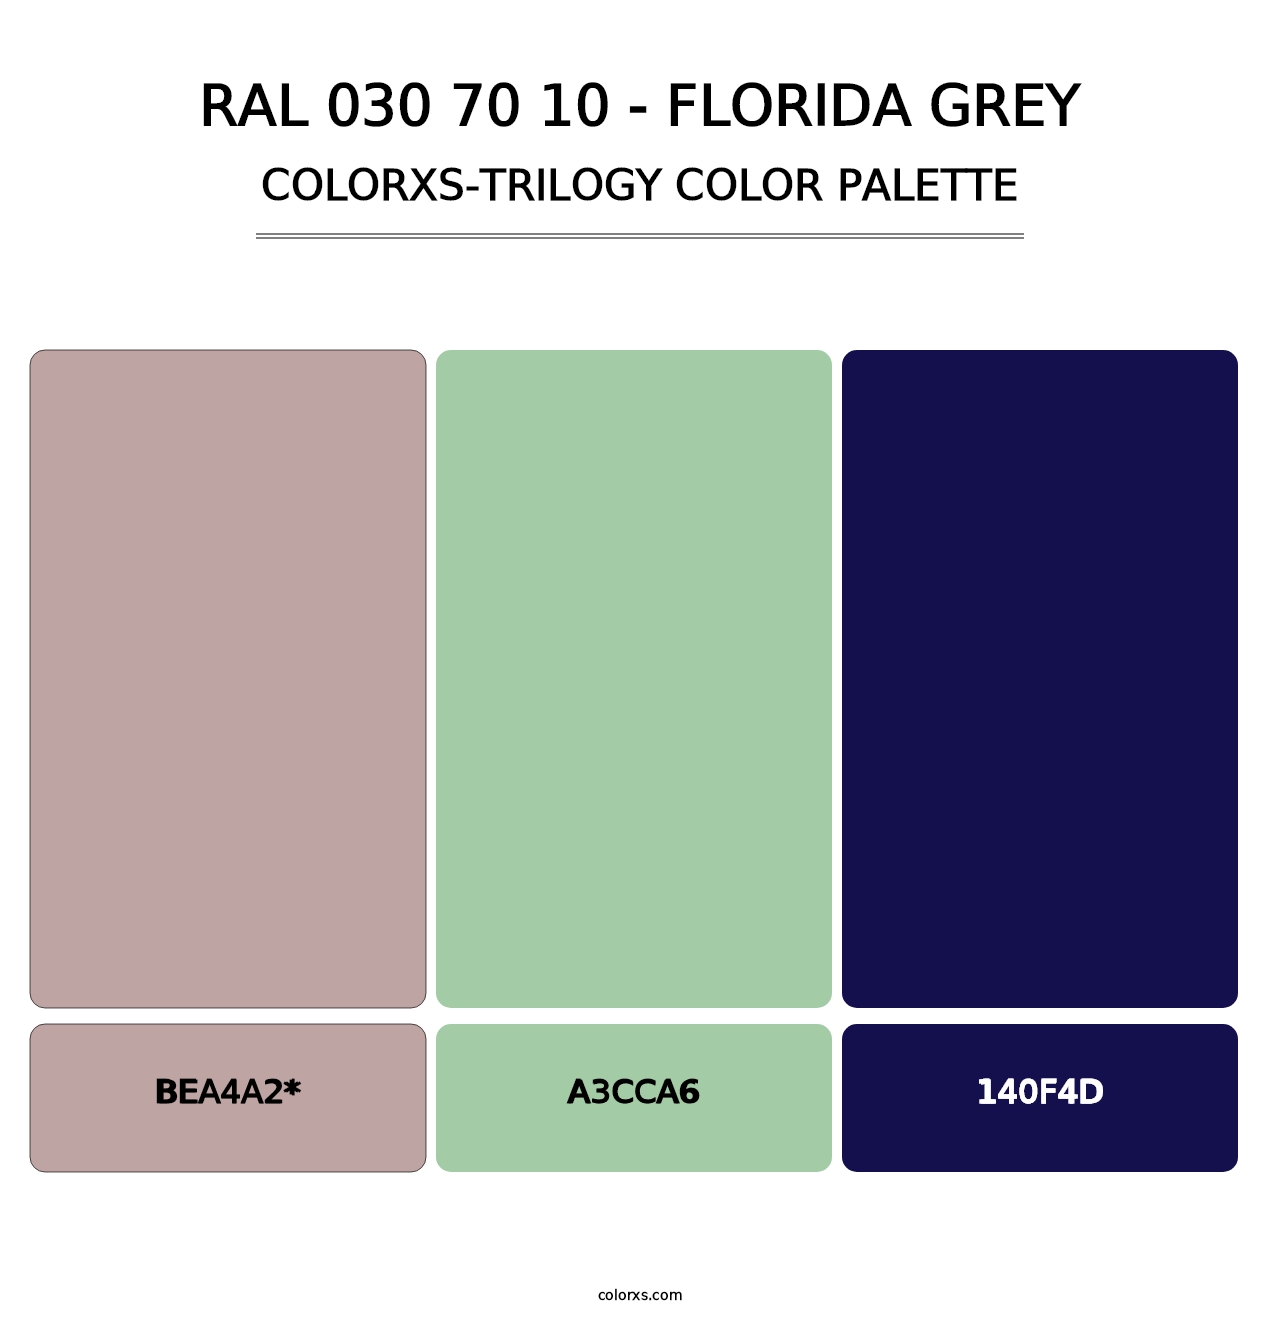 RAL 030 70 10 - Florida Grey - Colorxs Trilogy Palette